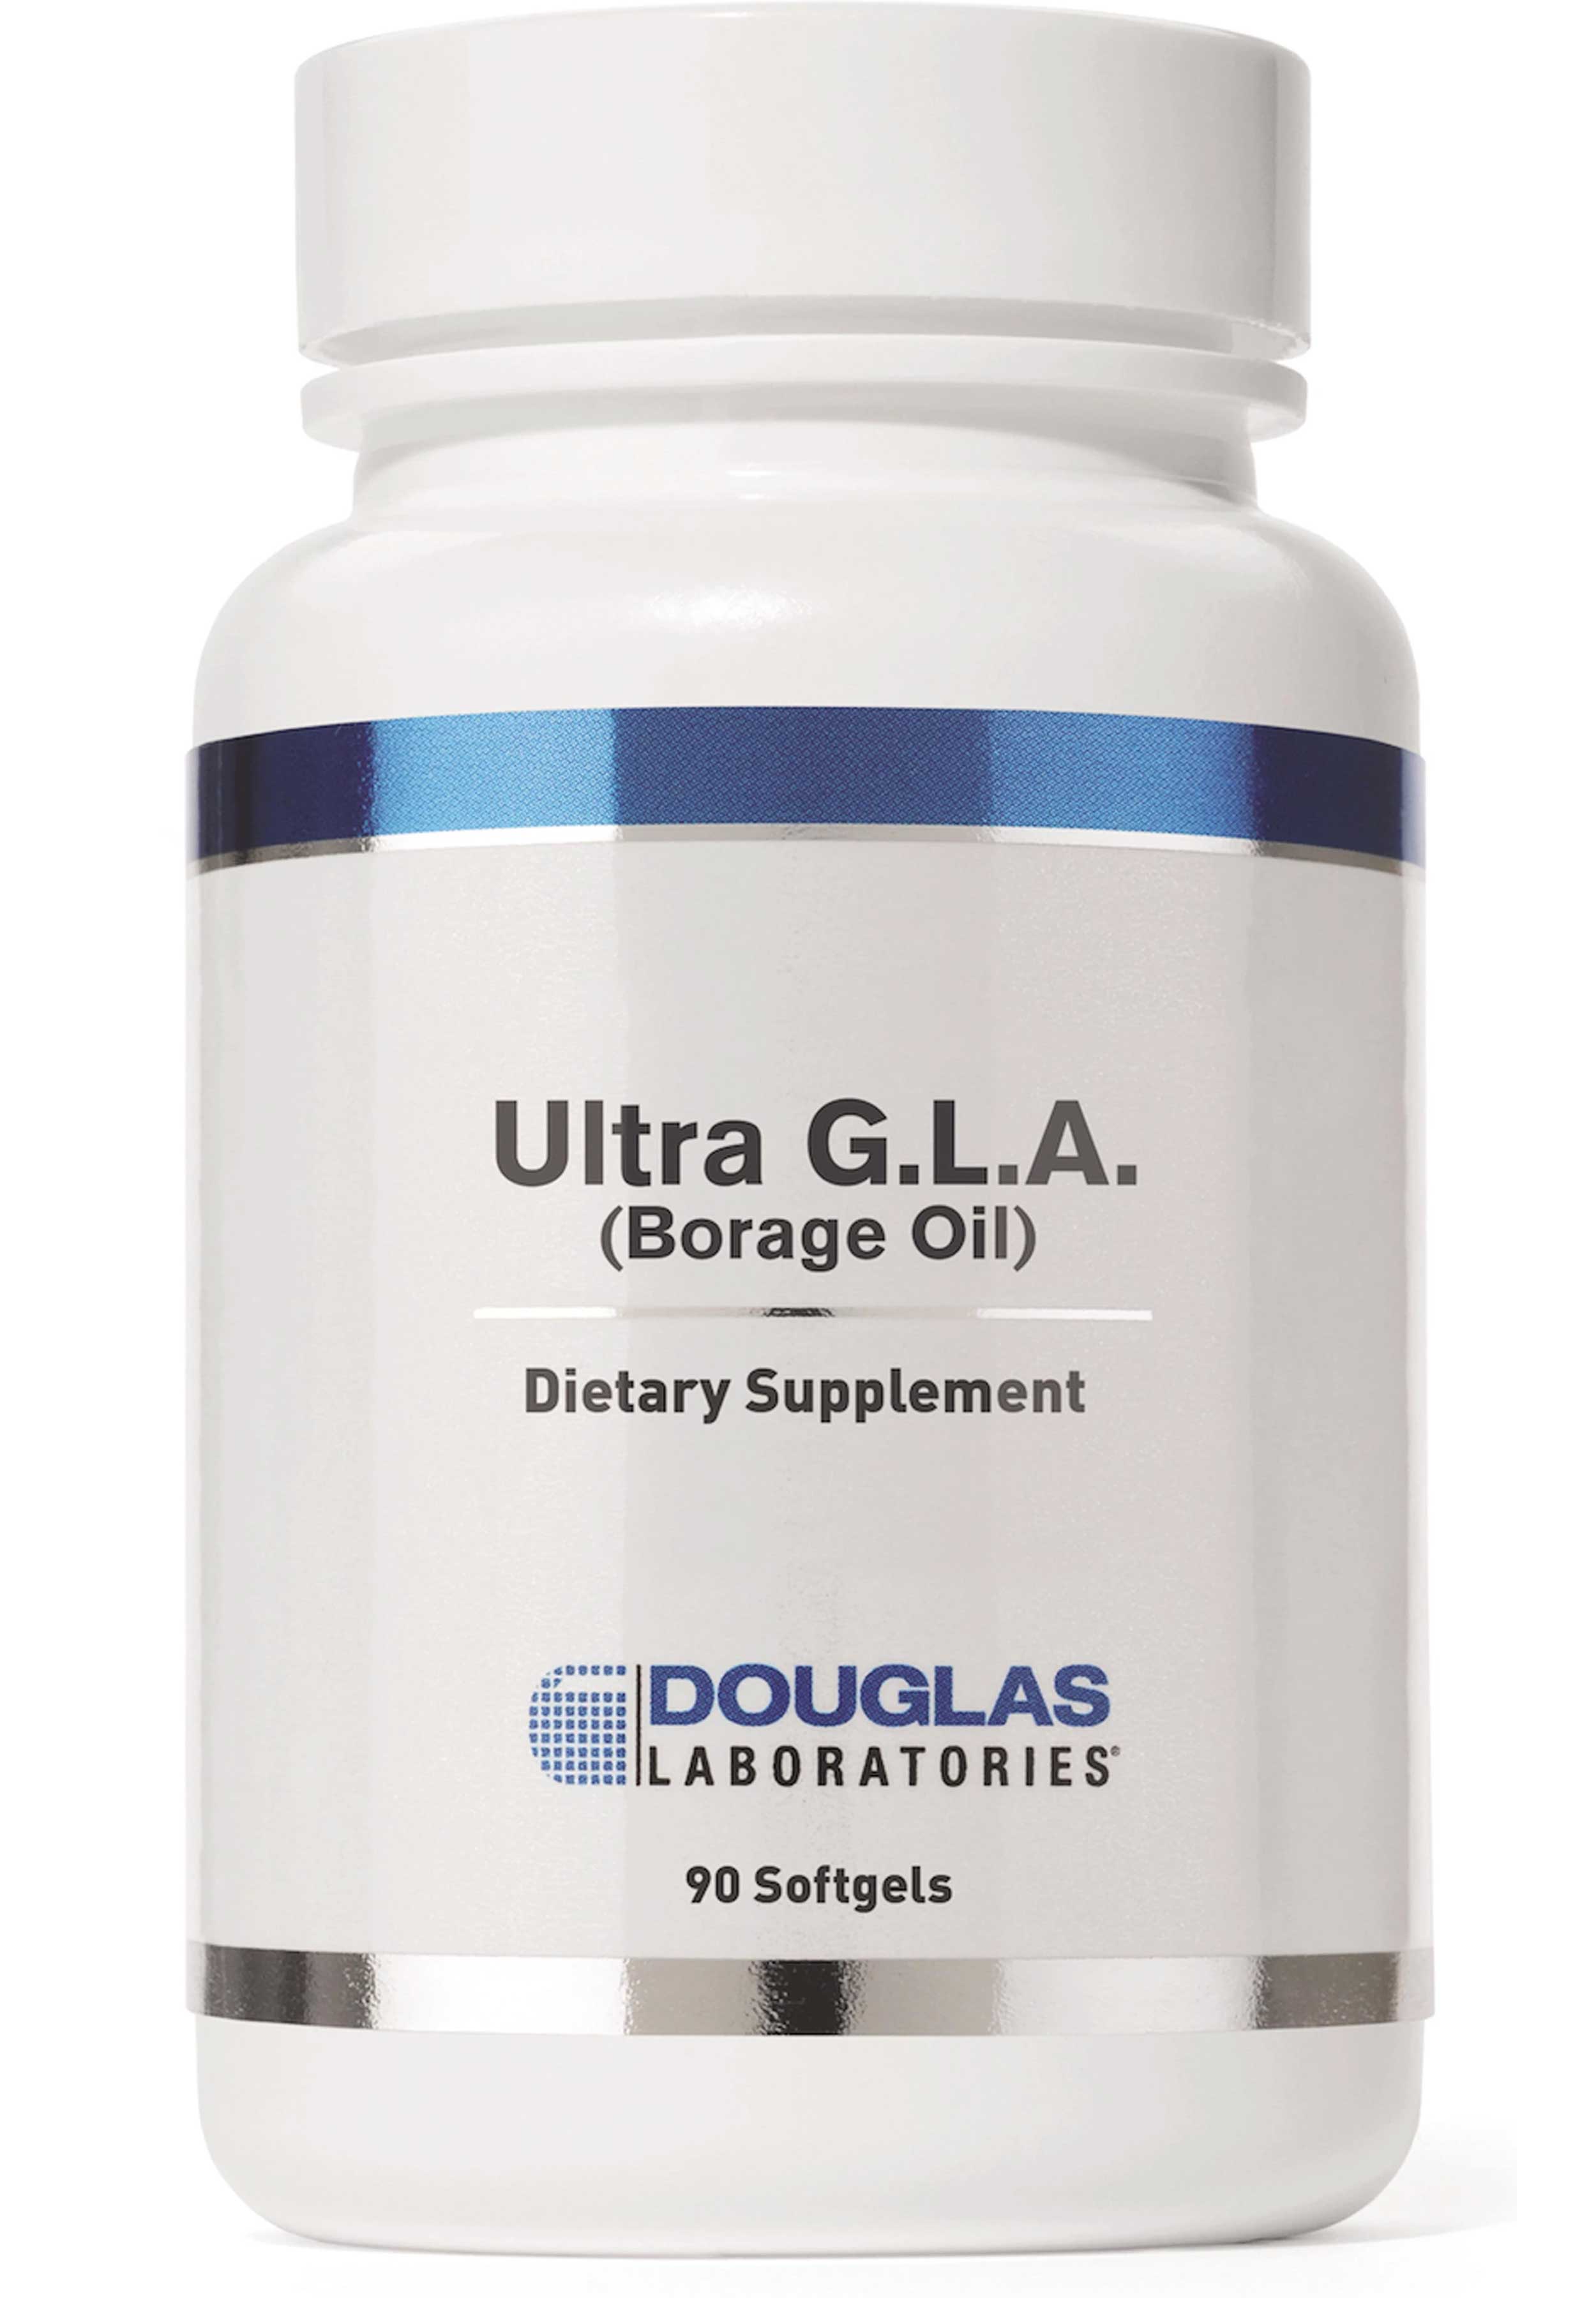 Douglas Laboratories Ultra G.L.A. (Borage Oil)